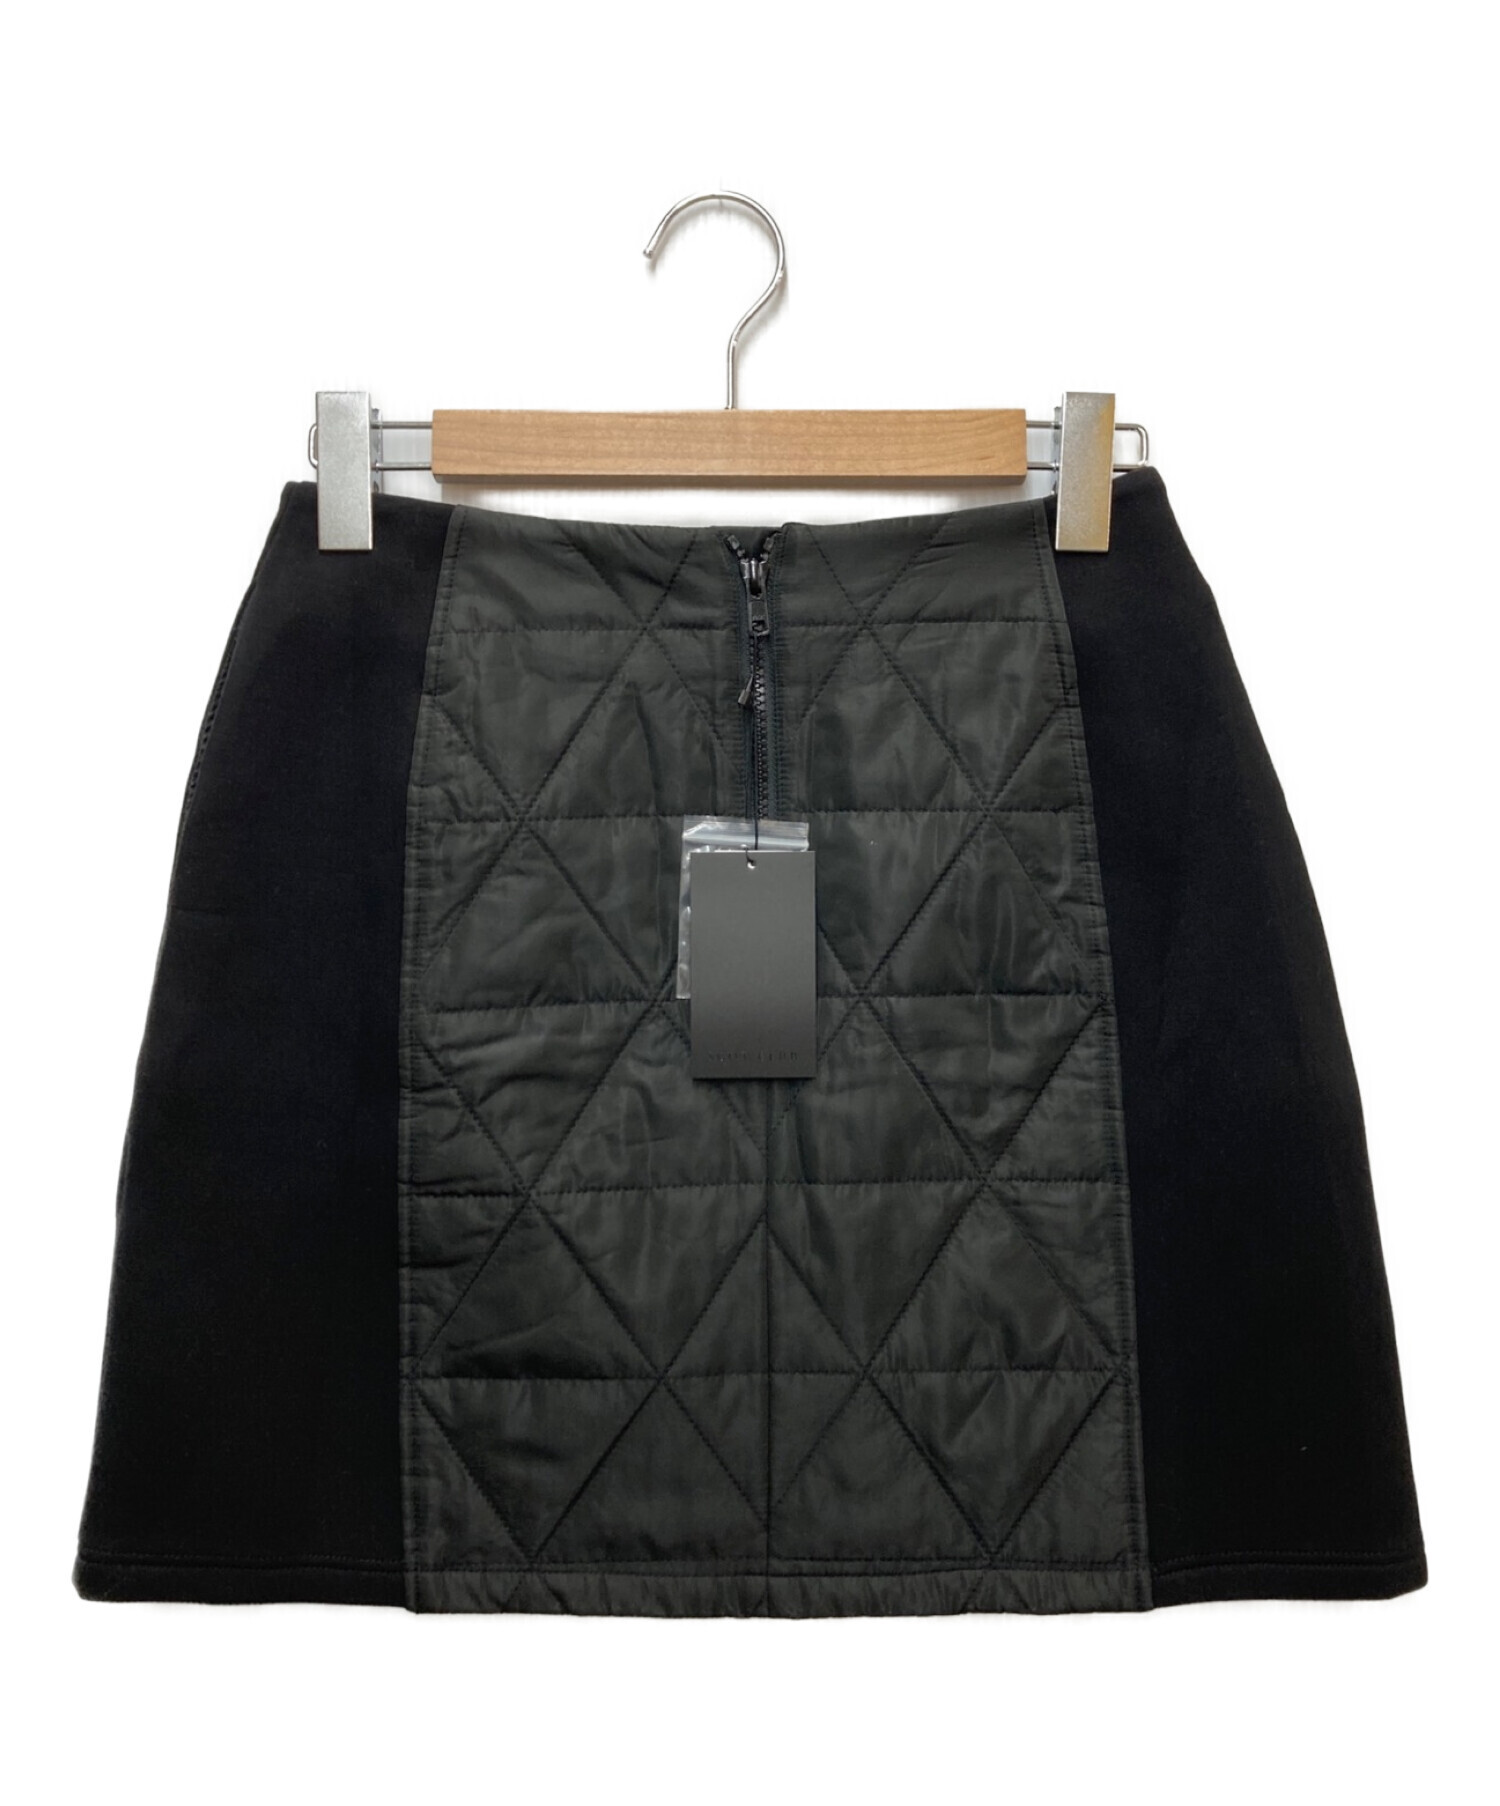 SCOT CLUB (スコットクラブ) キルティングドッキングスカート ブラック サイズ:FREE 未使用品